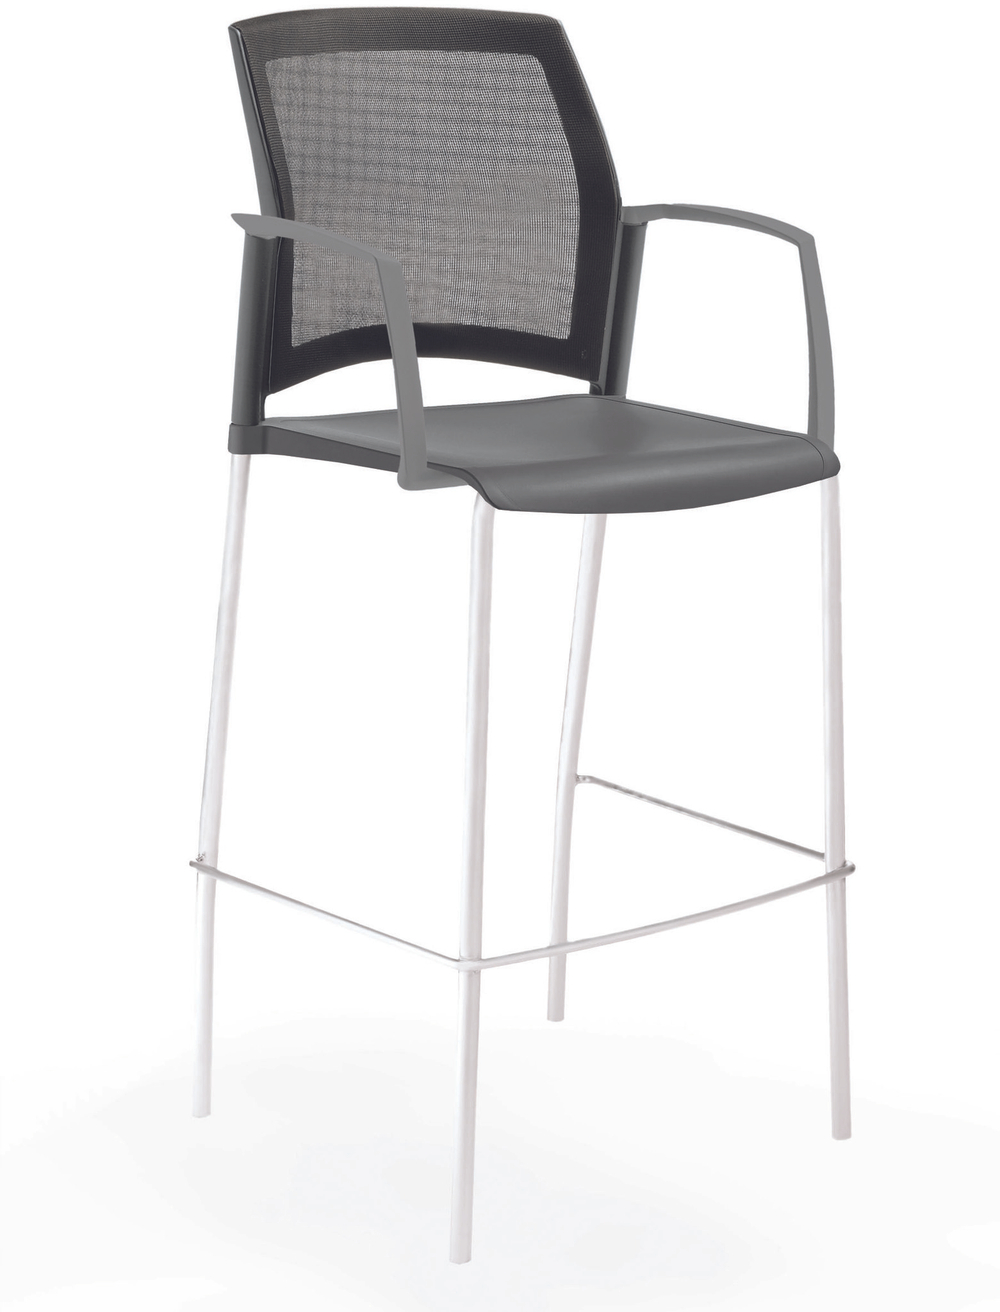 стул Rewind стул барный на 4 ногах, каркас белый, пластик серый, спинка-сетка, с закрытыми подлокотниками